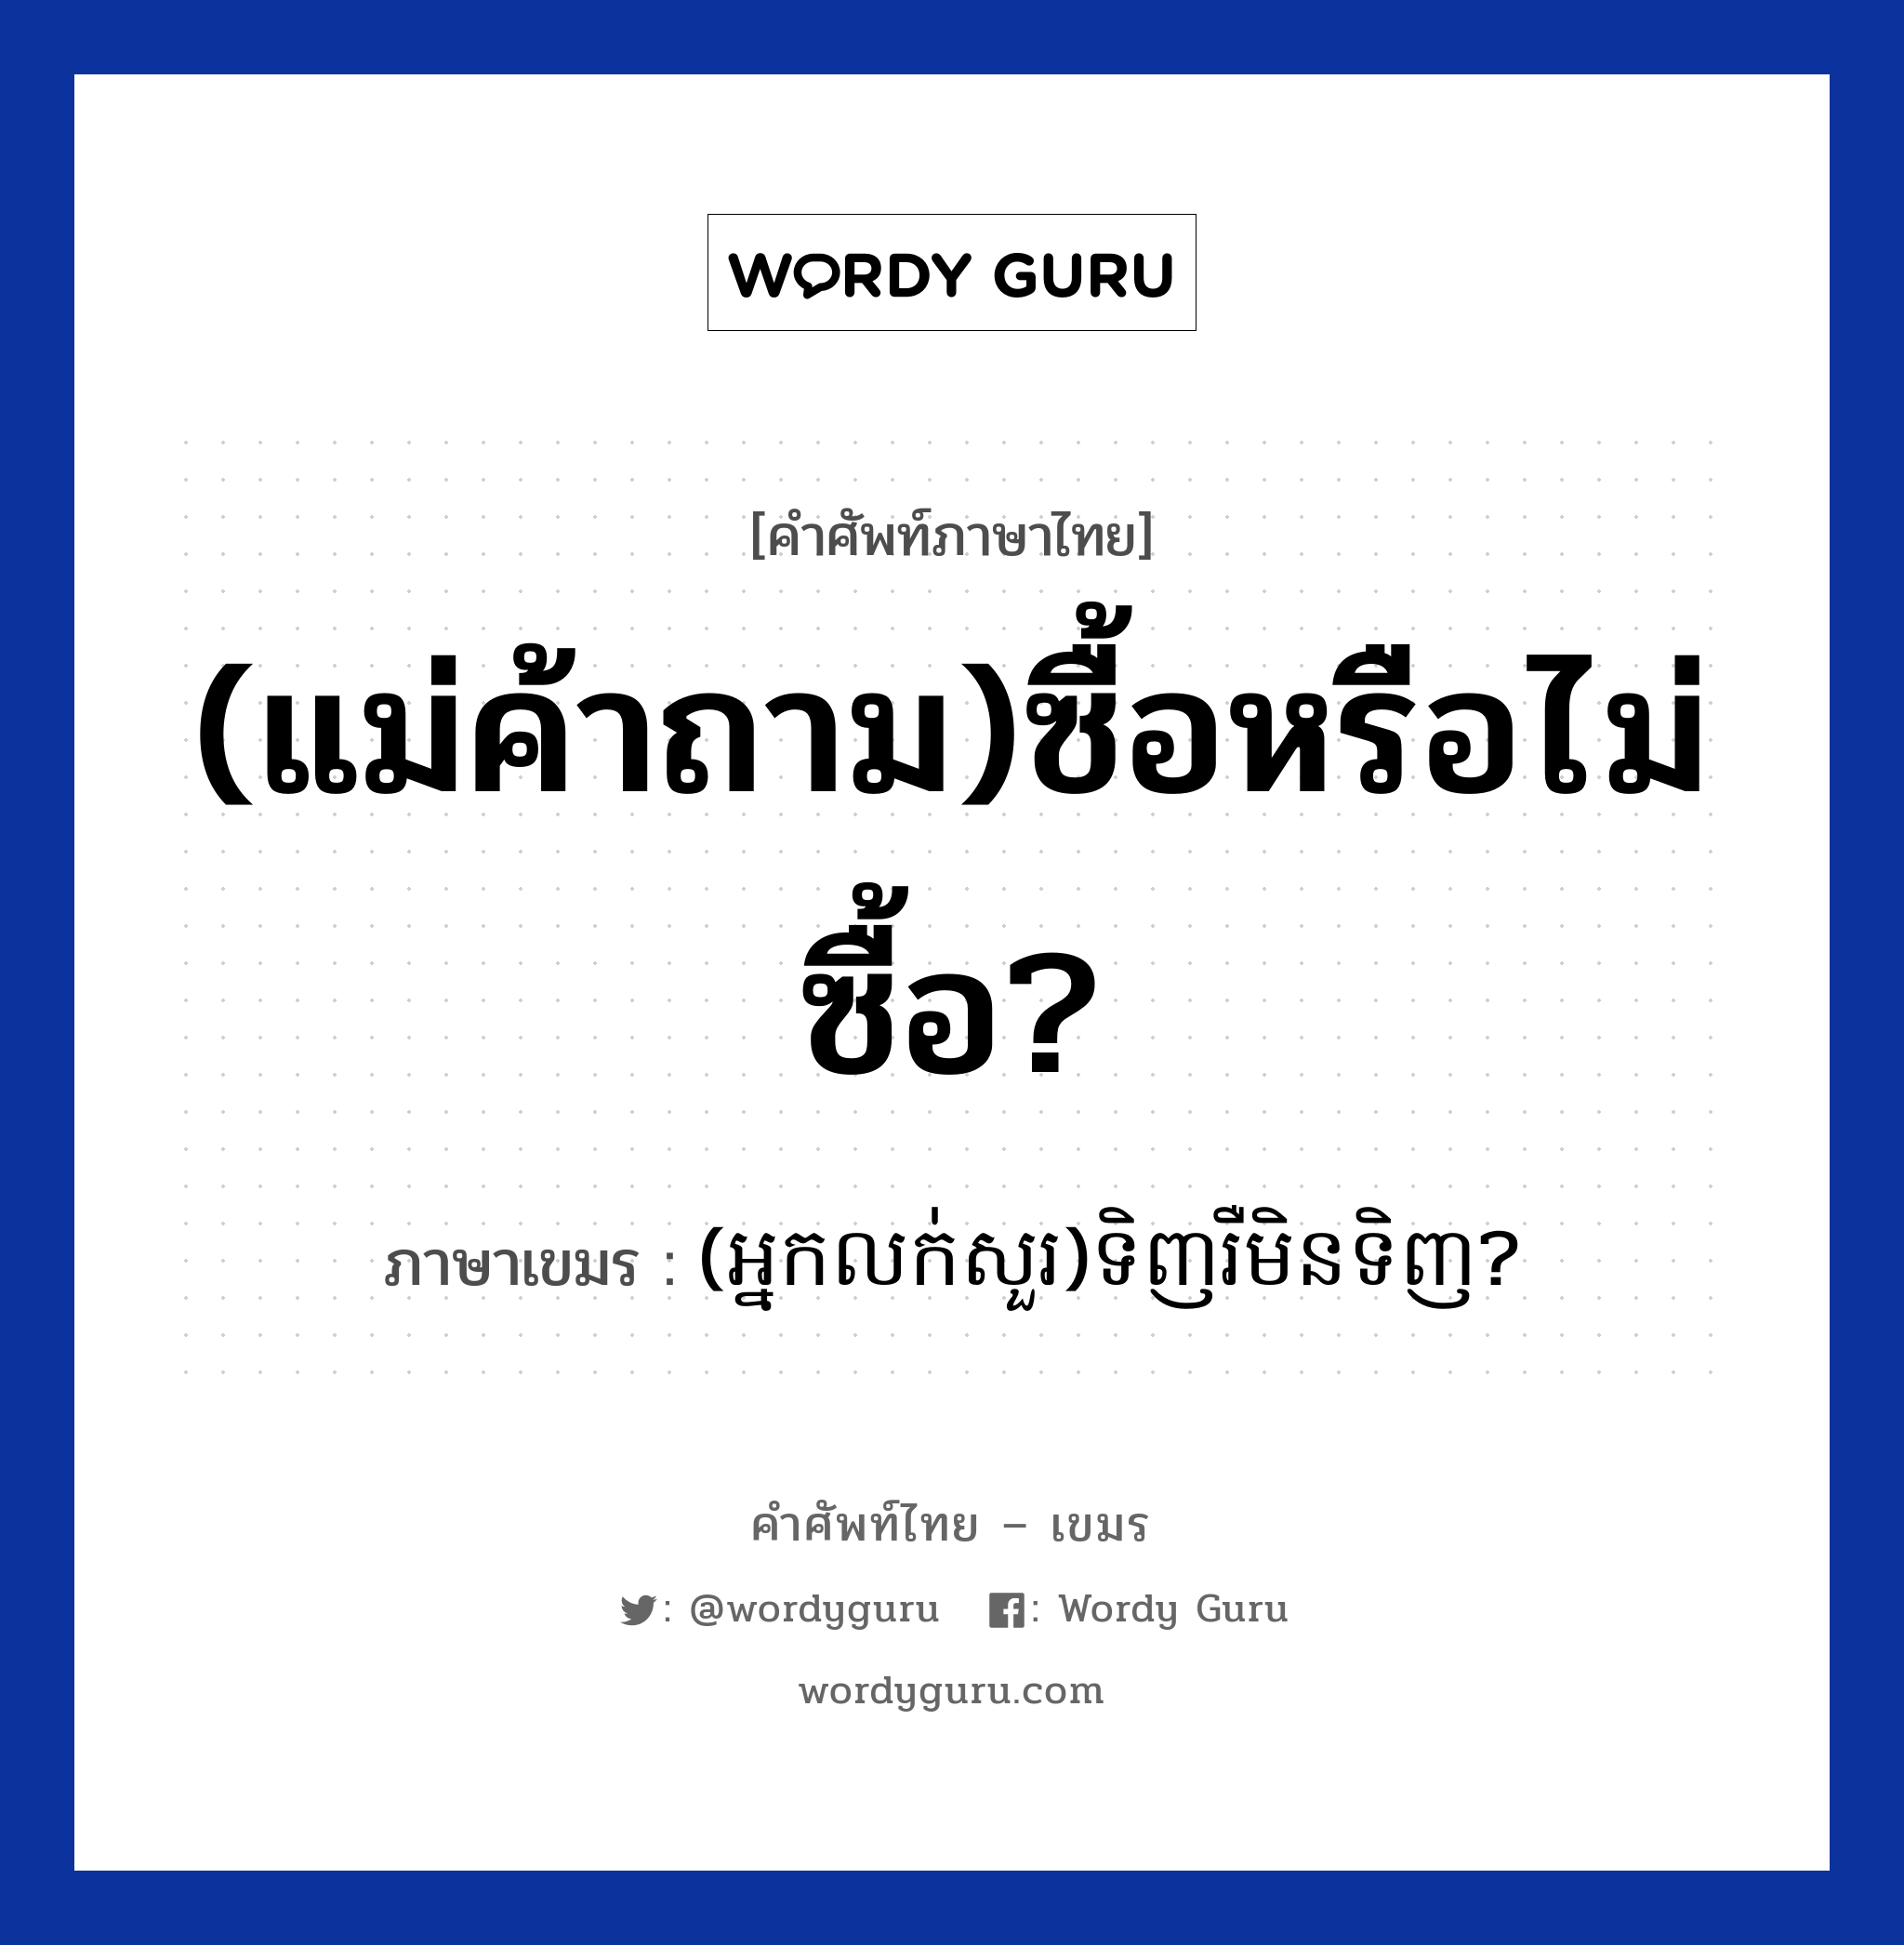 (អ្នកលក់សួរ)ទិញរឺមិនទិញ? ภาษาไทย?, คำศัพท์ภาษาไทย - เขมร (អ្នកលក់សួរ)ទិញរឺមិនទិញ? ภาษาเขมร (แม่ค้าถาม)ซื้อหรือไม่ซื้อ? หมวด การซื้อของ (Neaklouksour)tinh reo men tinh? หมวด การซื้อของ